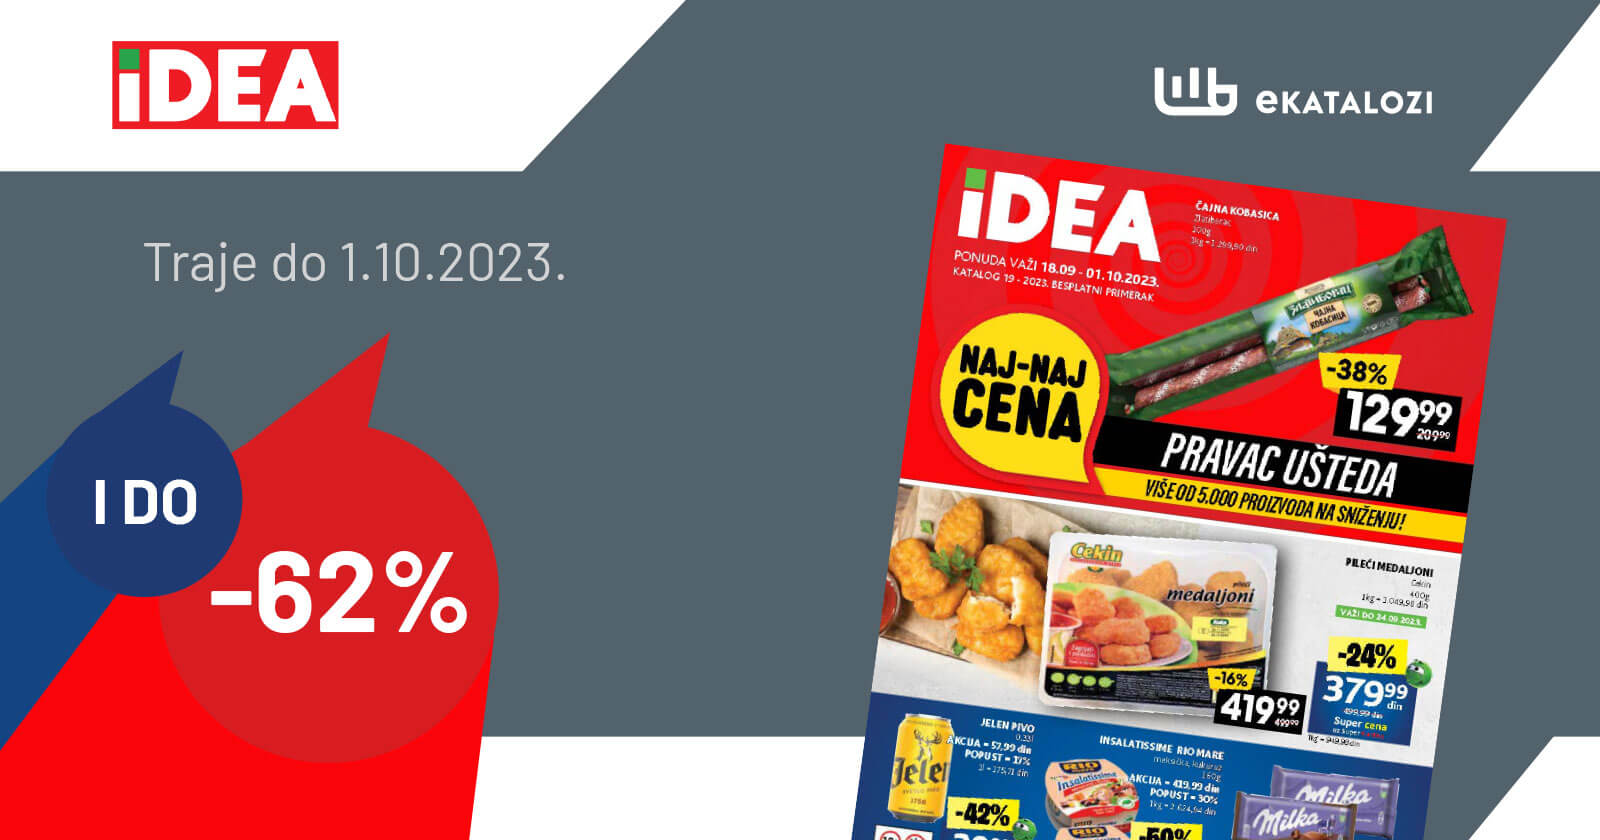 IDEA katalog SEPTEMBAR 2023. Akcija traje od 18.9. do 1.10.2023.